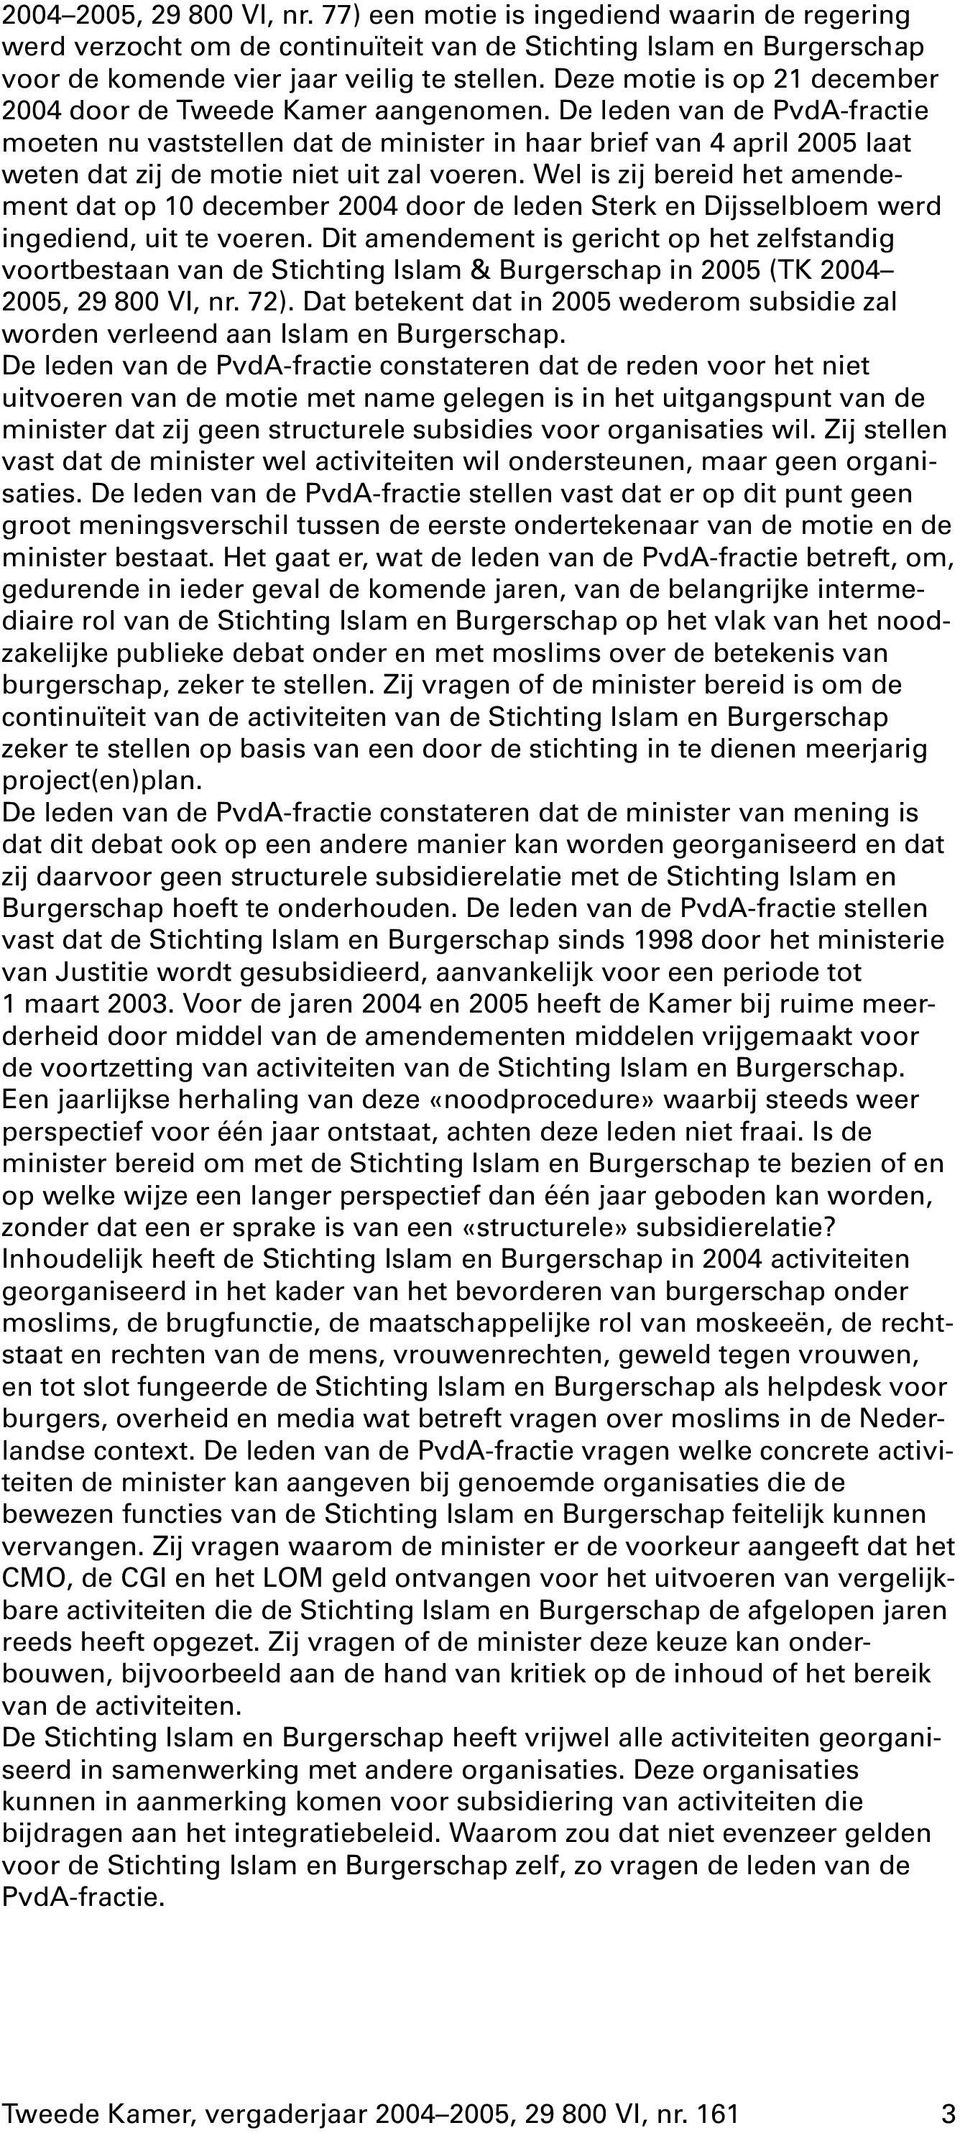 De leden van de PvdA-fractie moeten nu vaststellen dat de minister in haar brief van 4april 2005 laat weten dat zij de motie niet uit zal voeren.